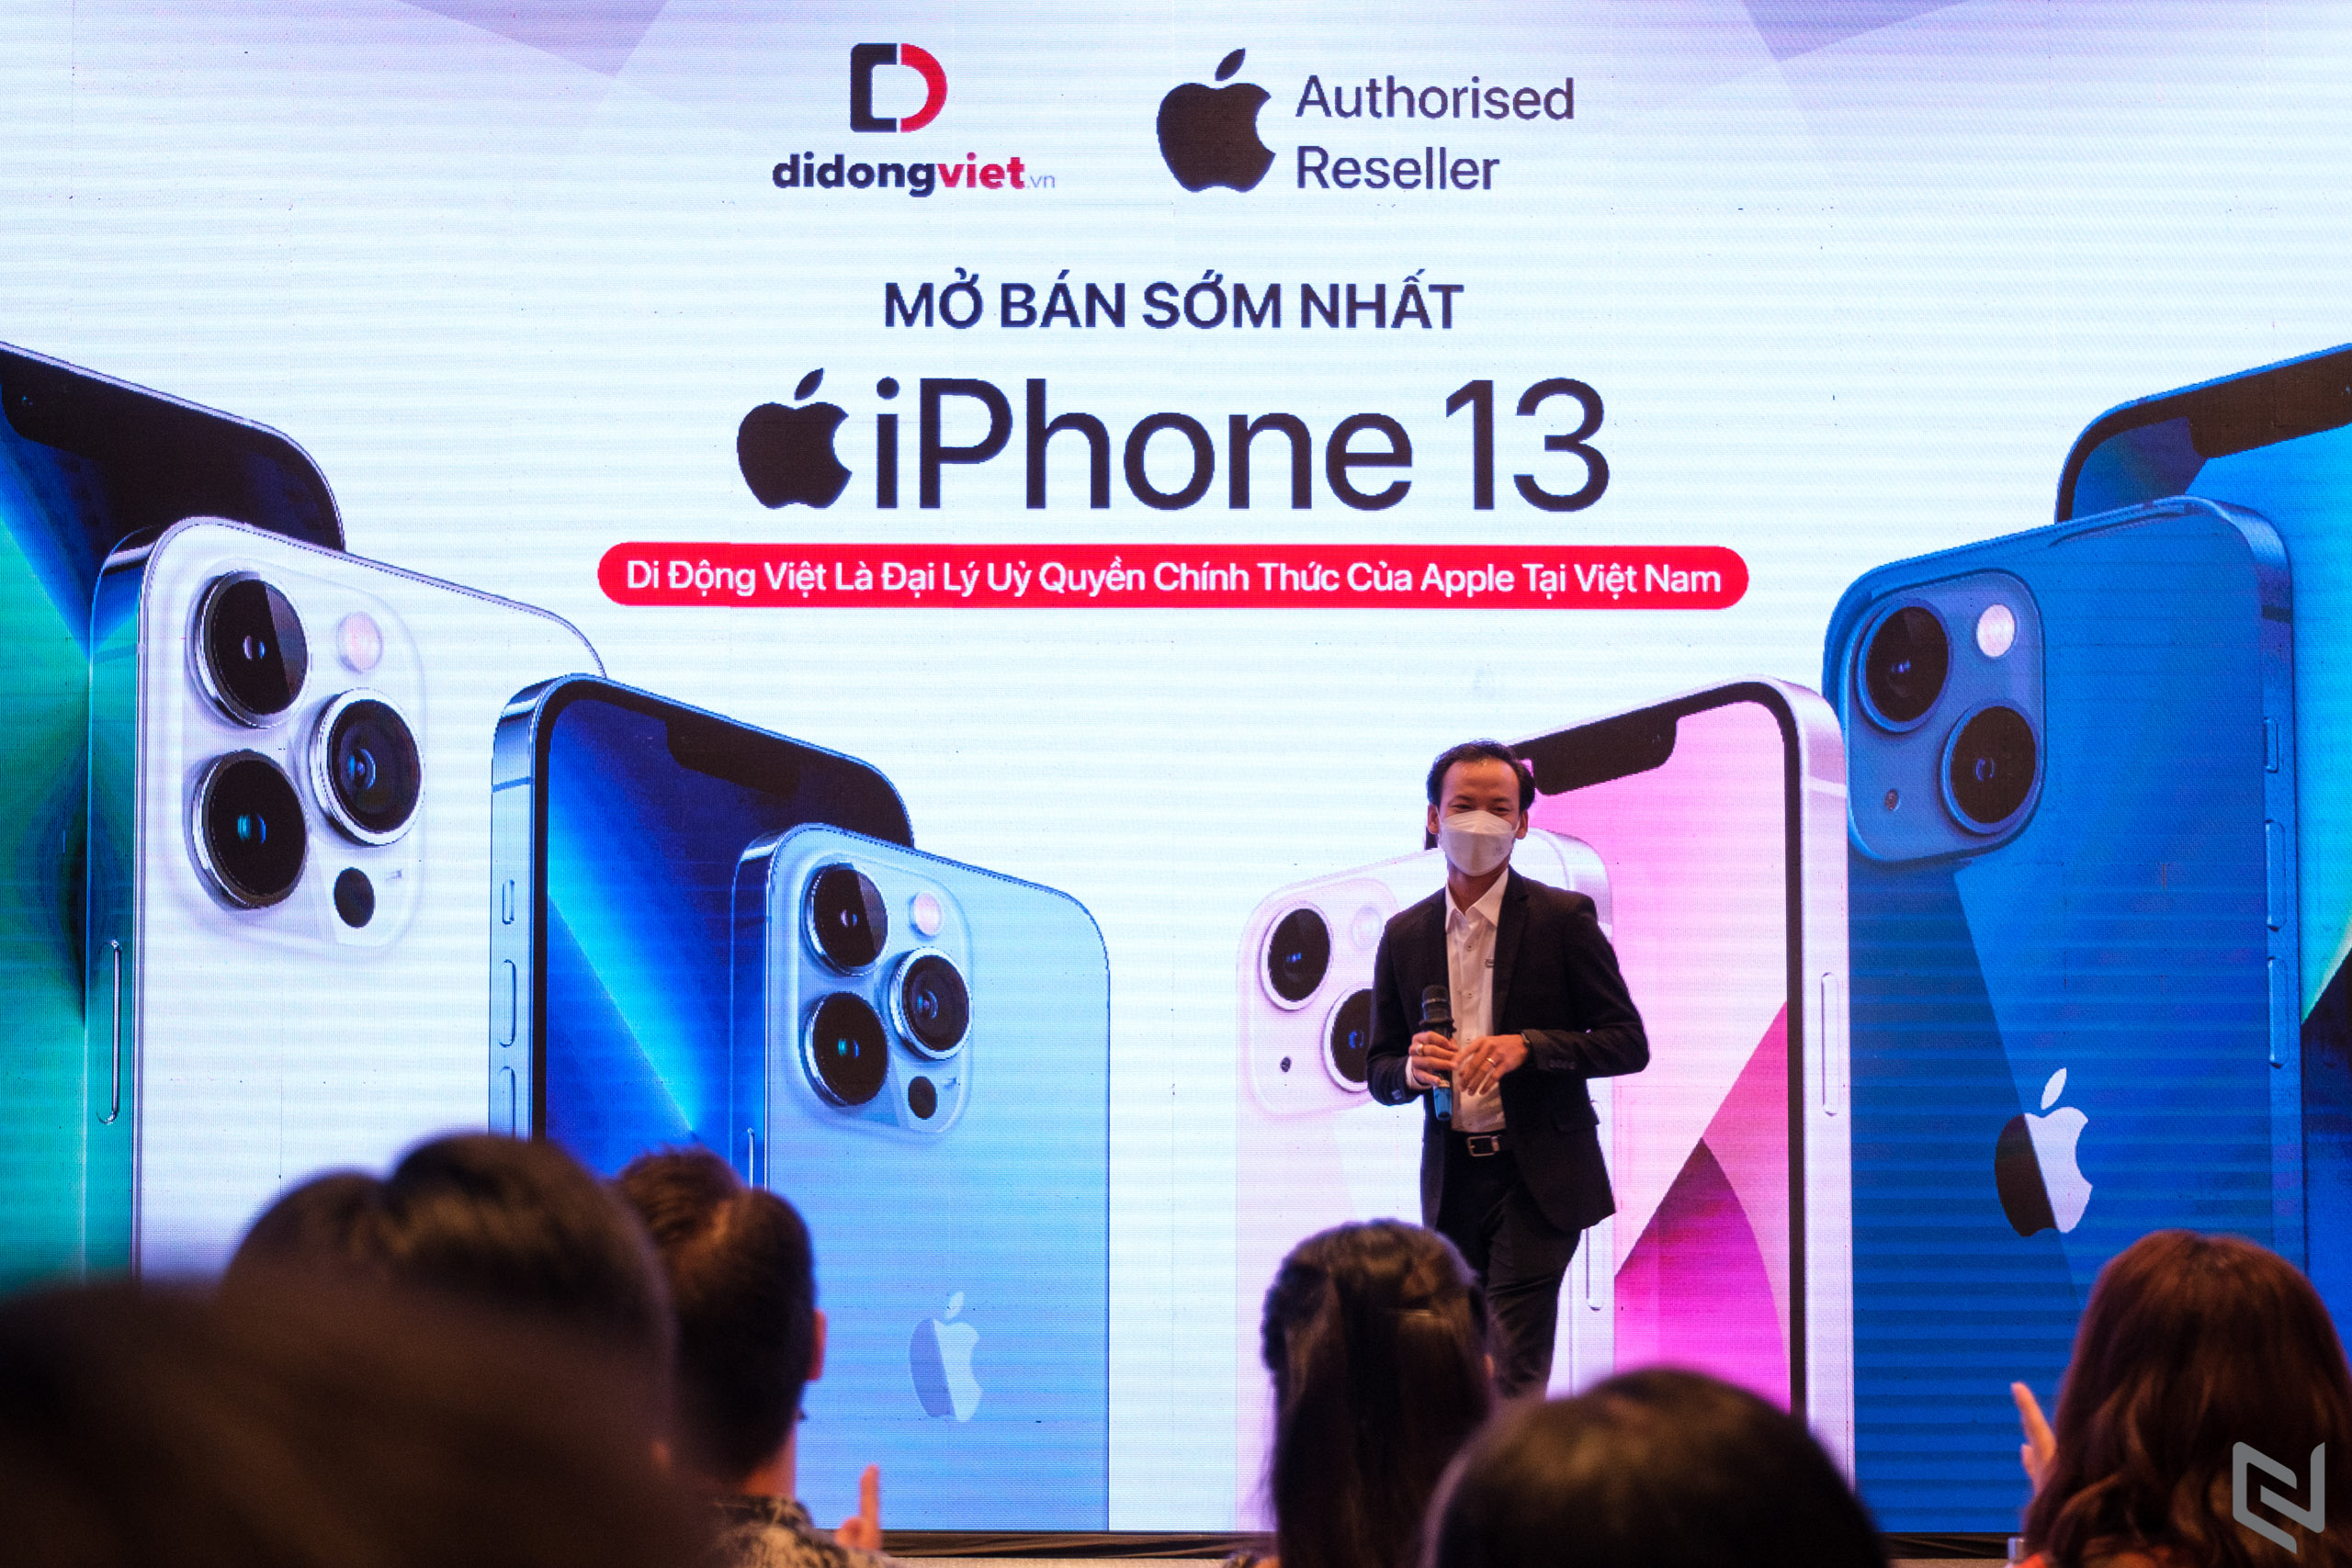 Mở bán sớm iPhone 13 series VN/A tại Di Động Việt